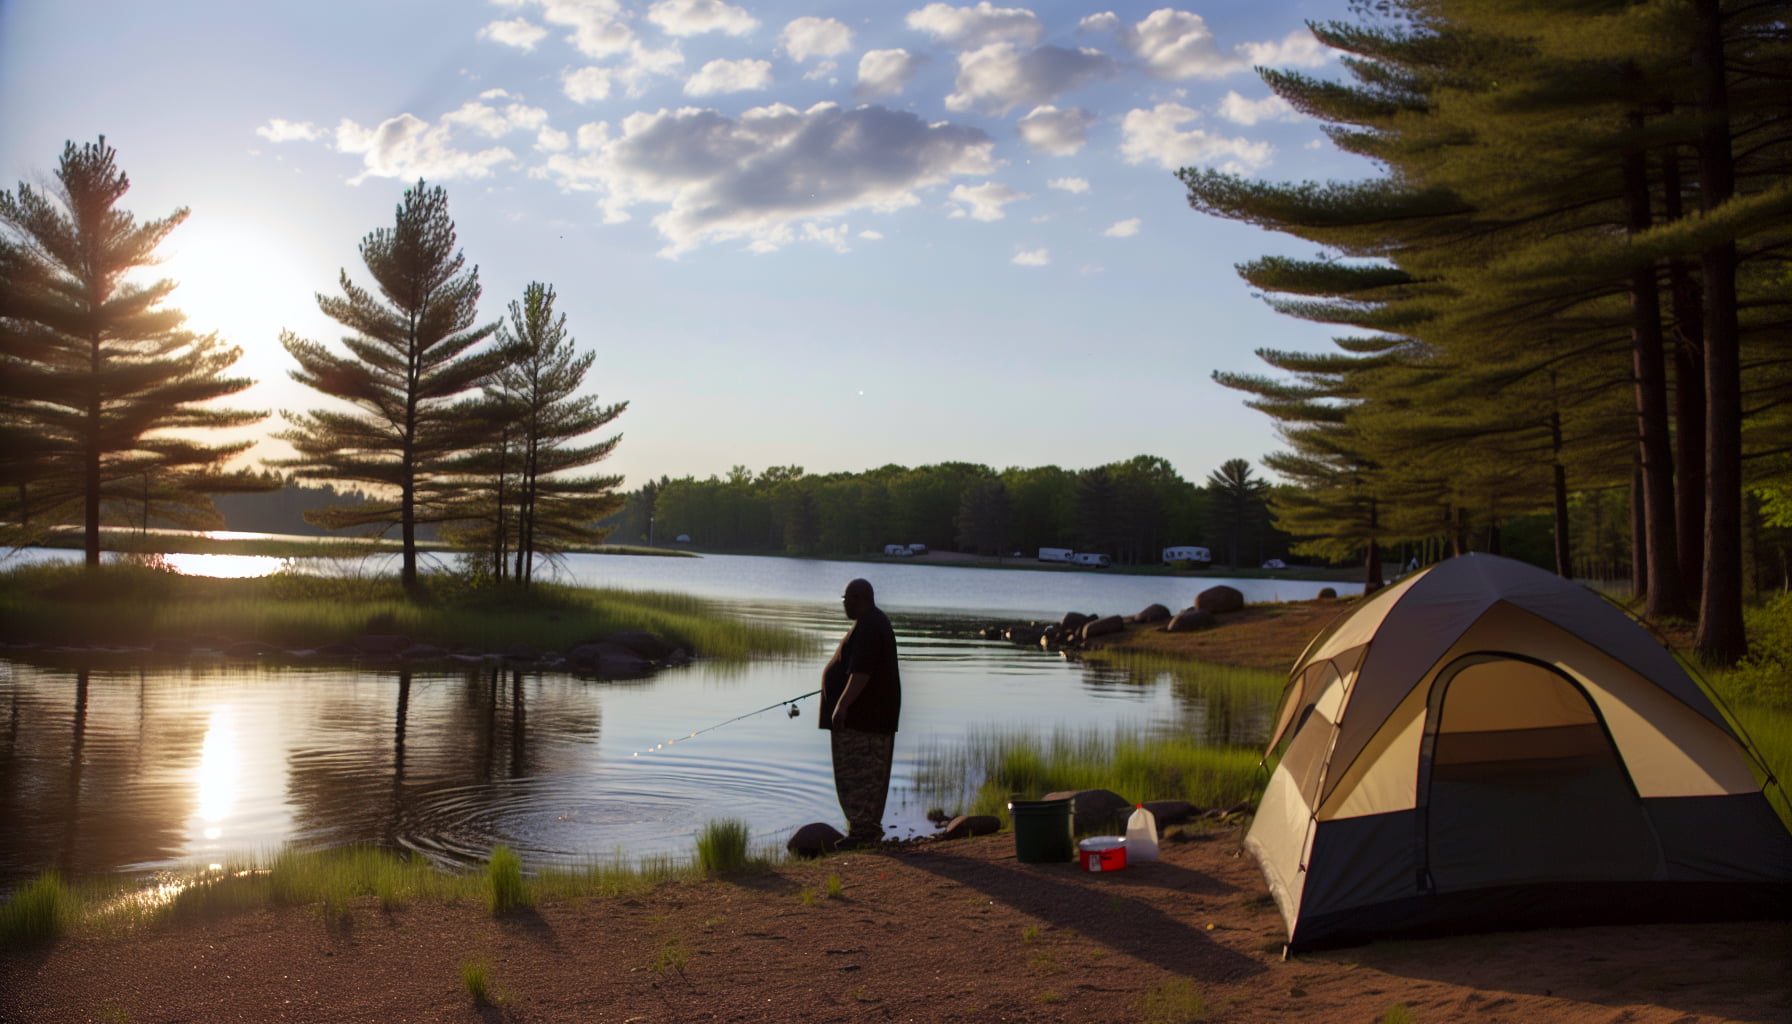 Comment choisir le meilleur endroit pour pêcher en camping ?